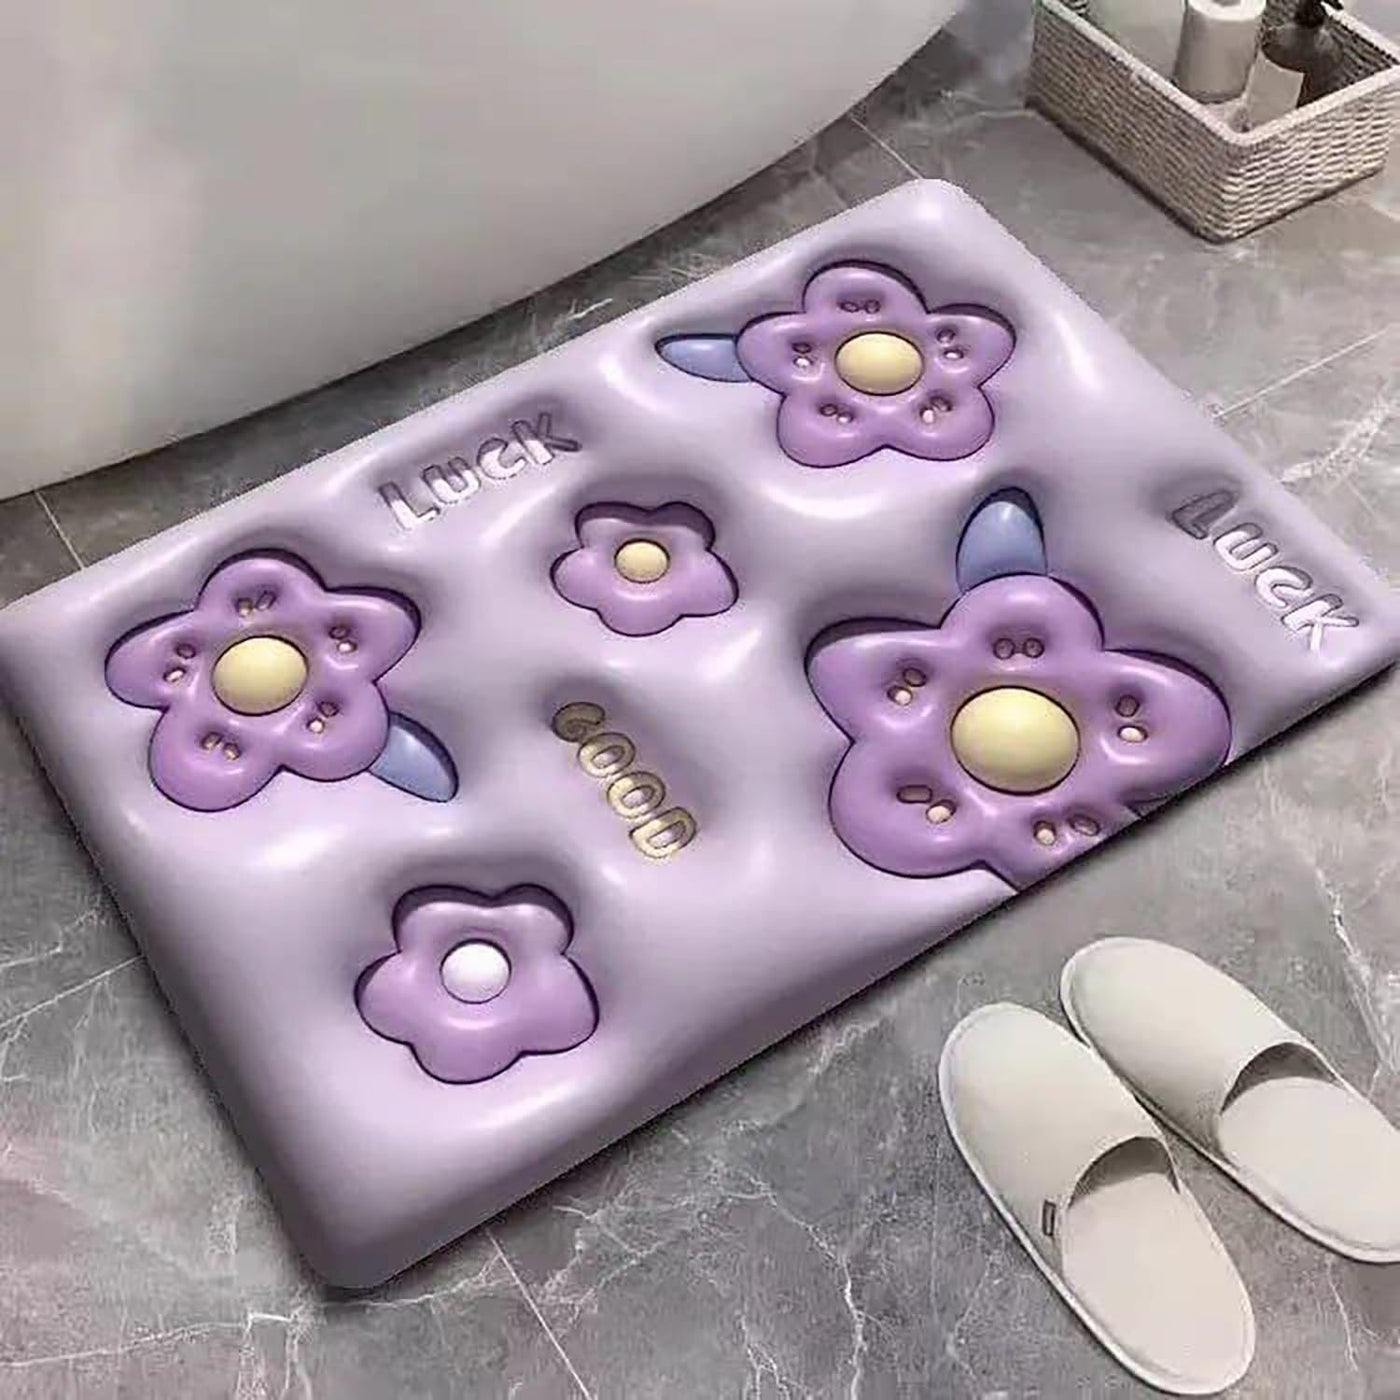 3D Shaped Bath Mat